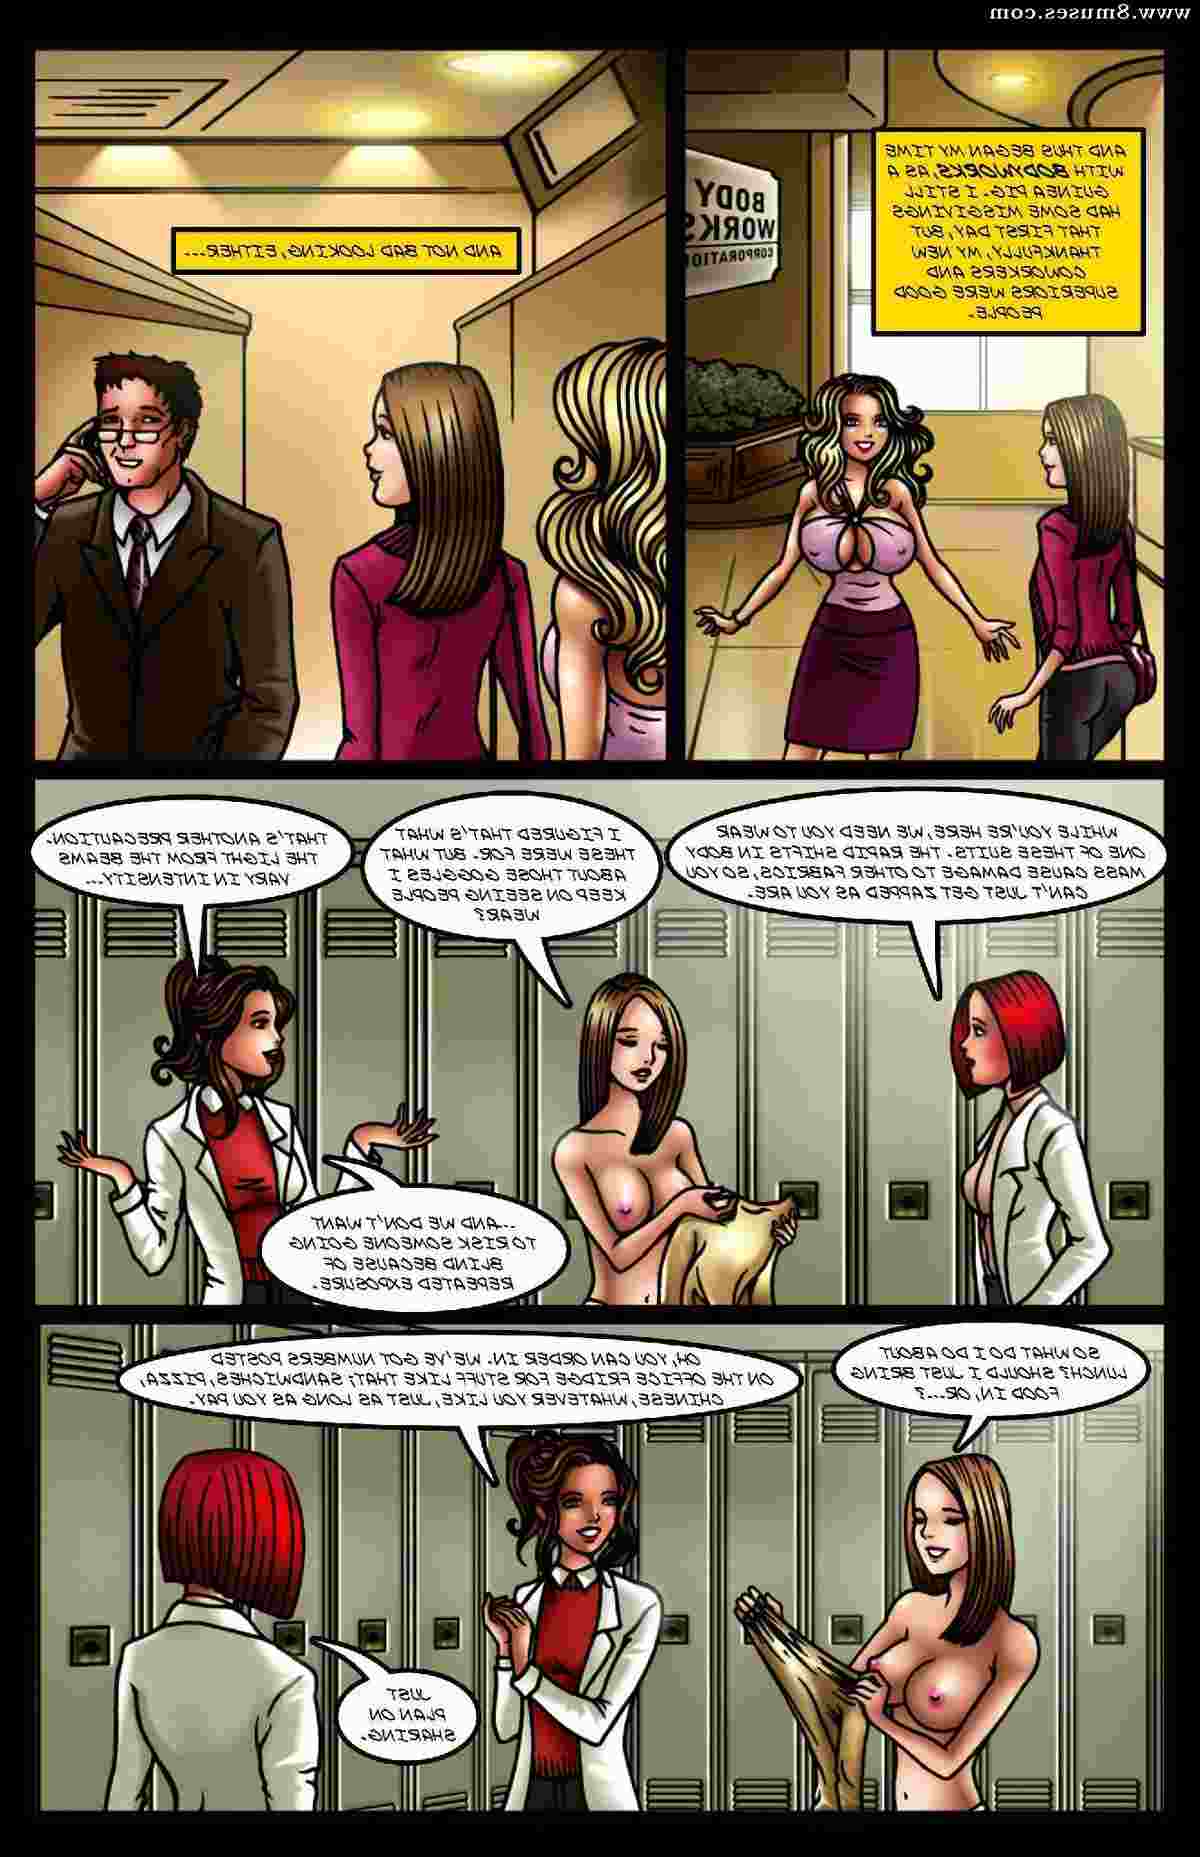 BE-Story-Club-Comics/The-Boob-Job The_Boob_Job__8muses_-_Sex_and_Porn_Comics_13.jpg